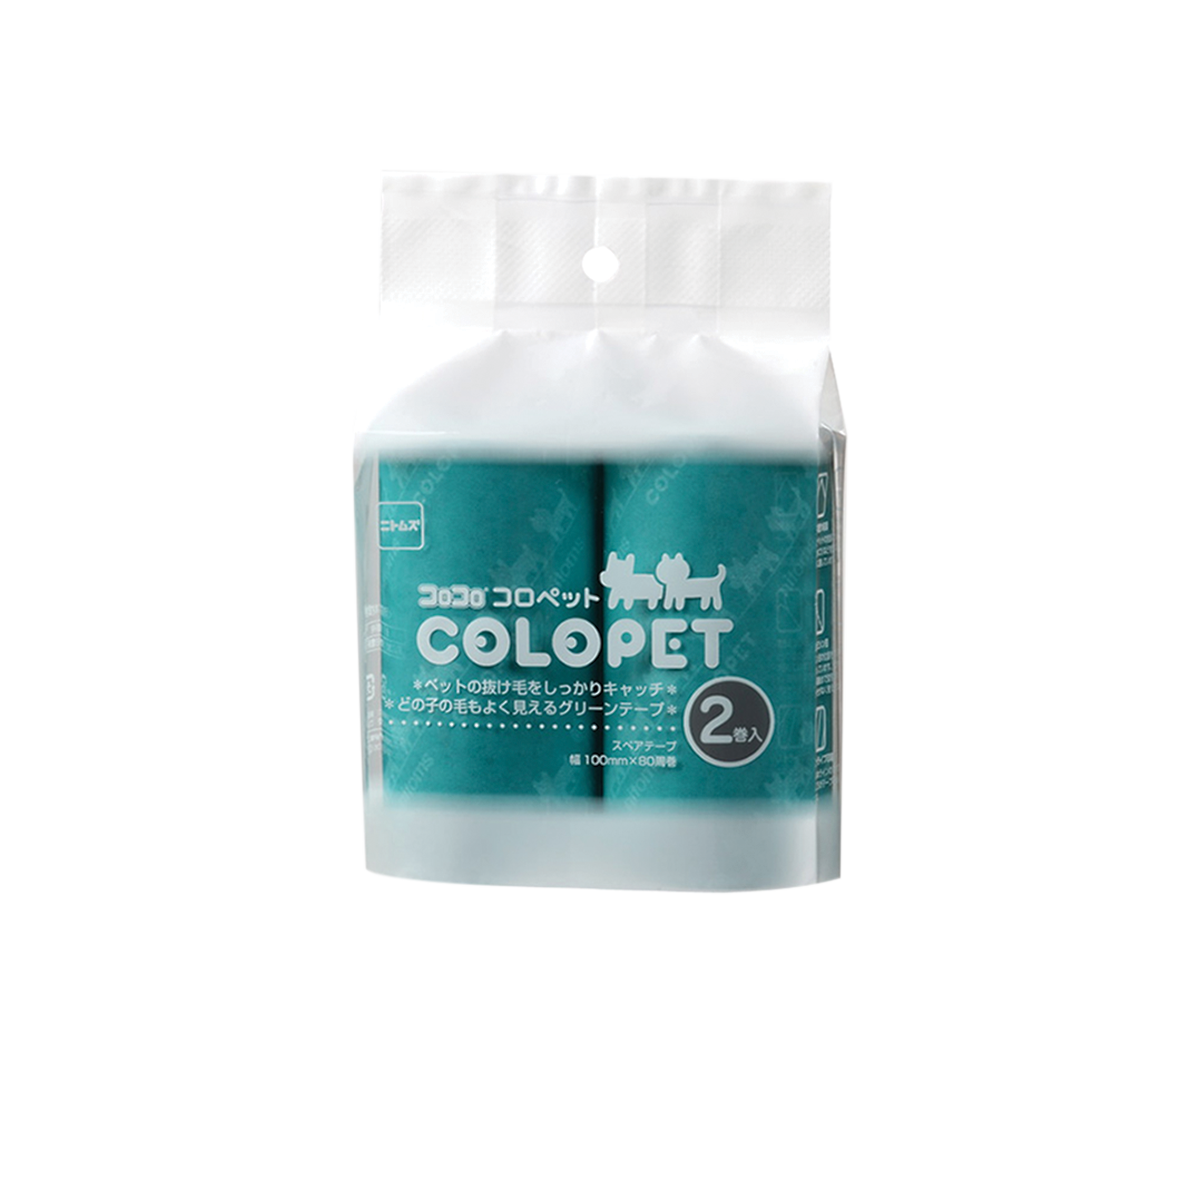 COLOCOLO Colopet Refill 2 pcs โคโรโคโร ลูกกลิ้งชนิดเติม 2 ชิ้น